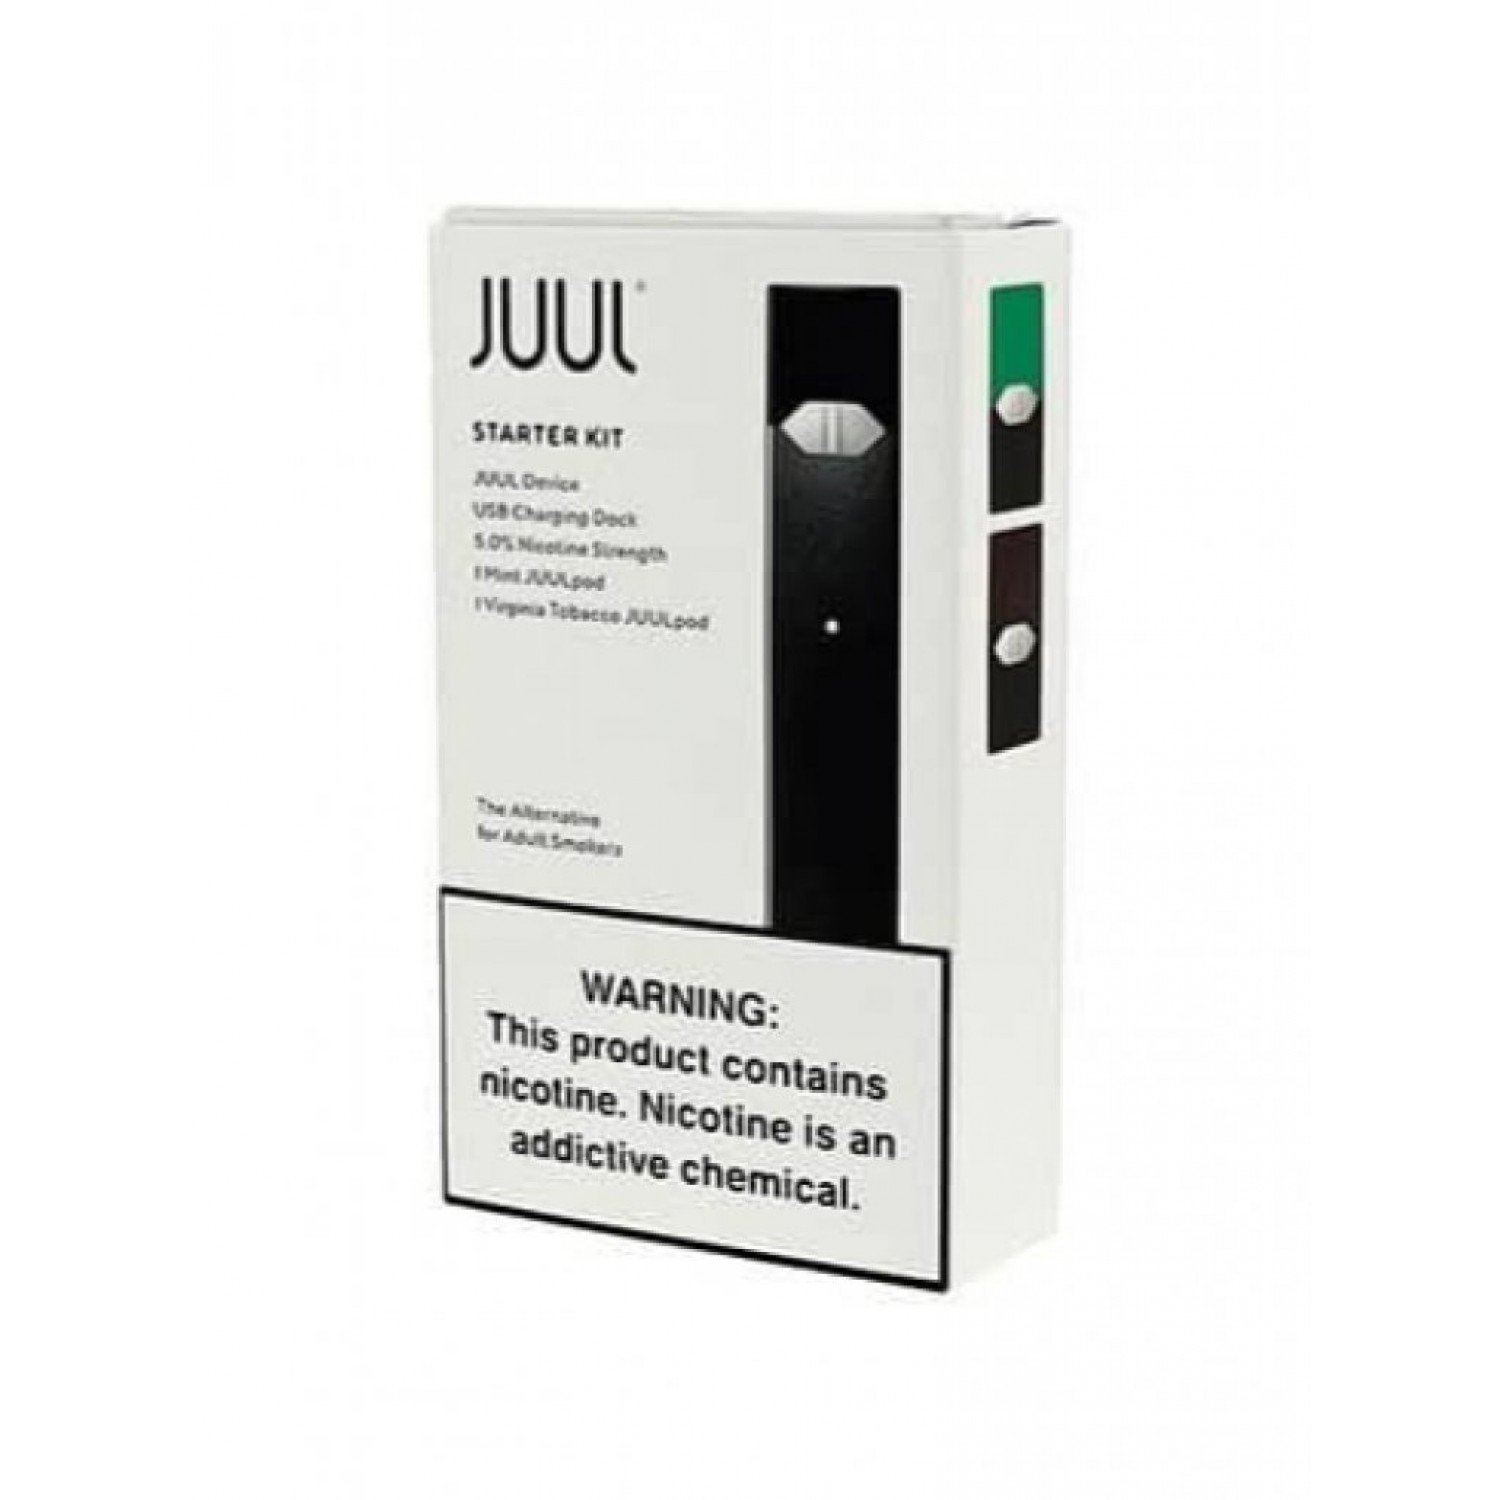 JUUL - Pod Mod Elektronik Sigara Kit (4 Kartuşlu)